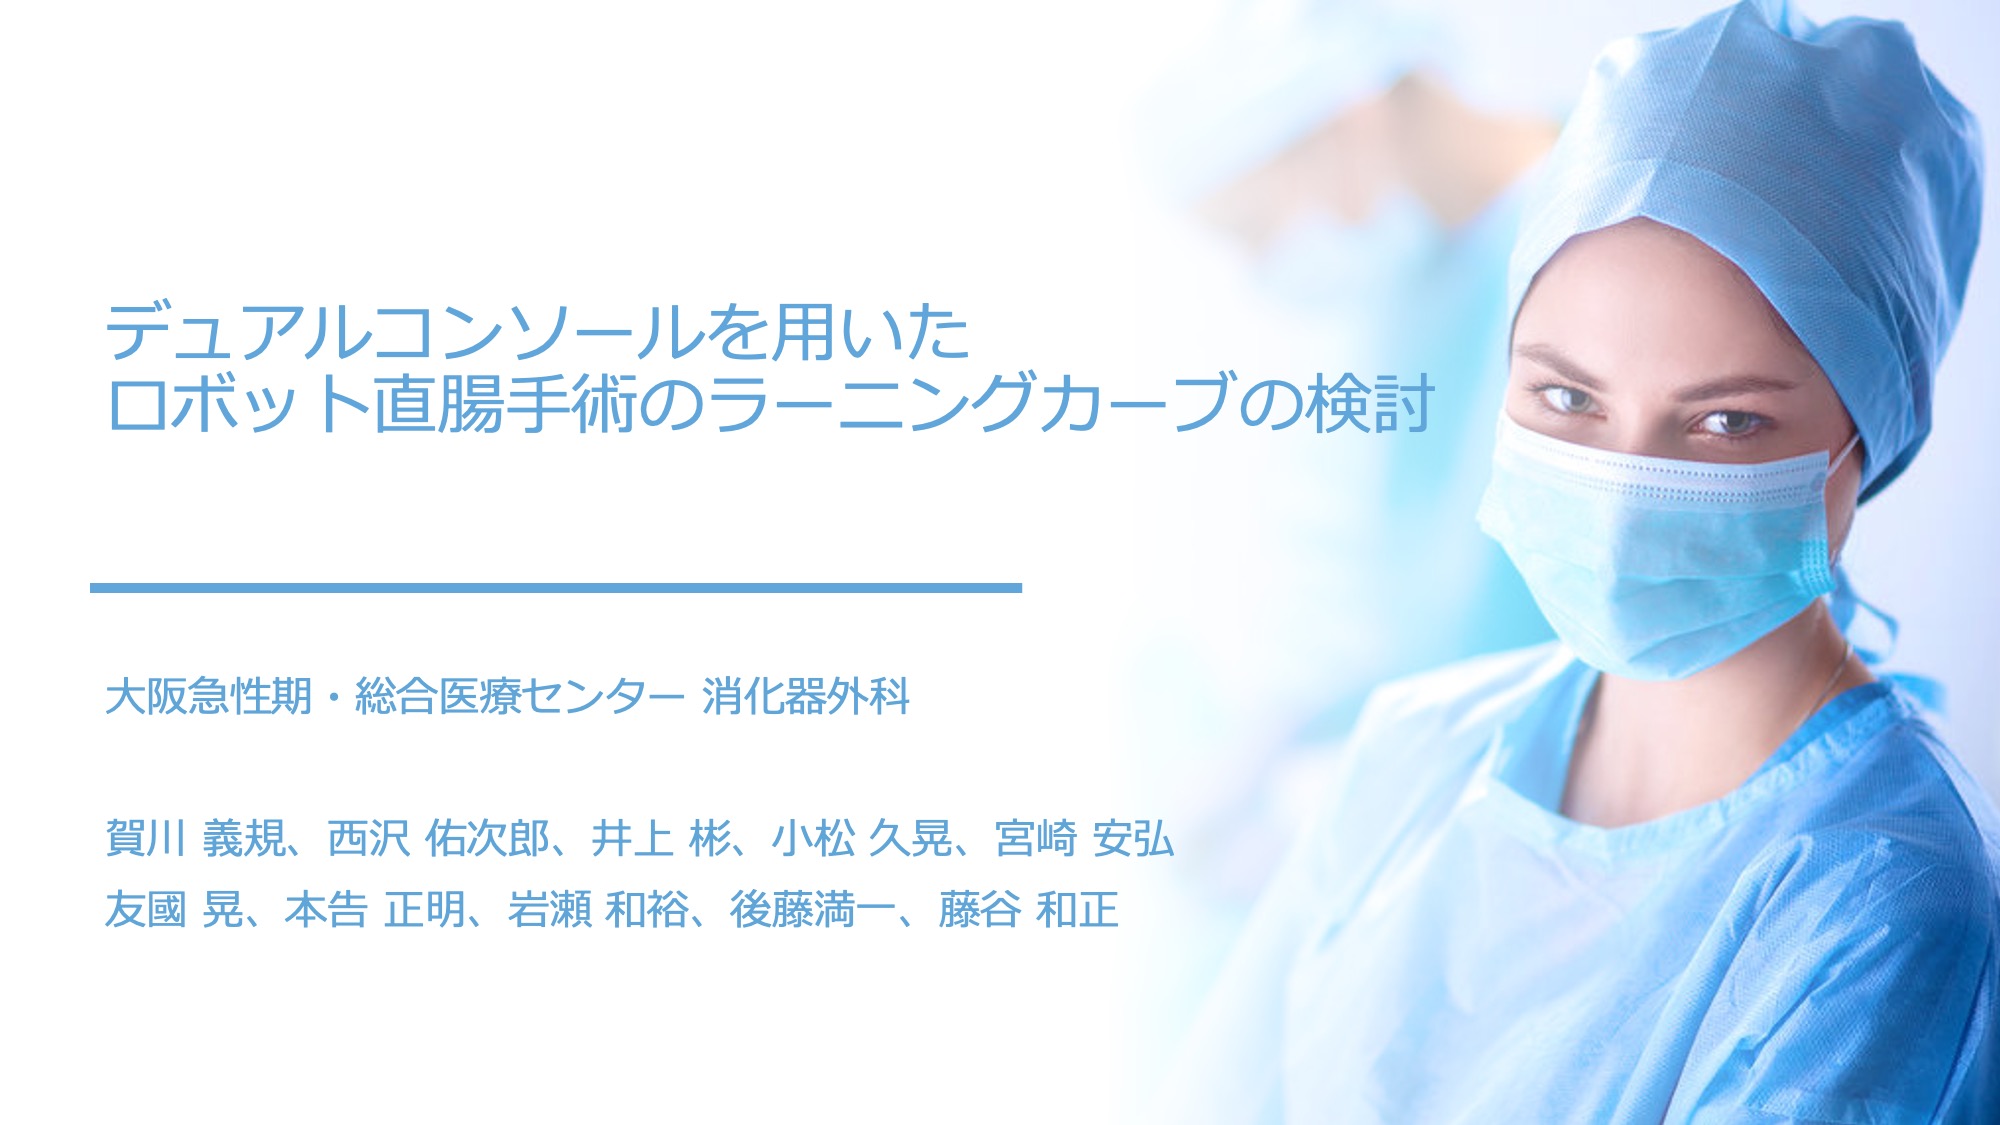 大阪急性期・総合医療センター　消化器外科　レジデント　ロボット手術　全大腸癌がロボット手術　教育　レジロボ 第35回日本内視鏡外科学会総会 The 35th Annual Meeting of the Japan Society for Endoscopic Surgery 【同時開催】 アジアロボット・内視鏡外科学会（ACRLS 2022） Asian-Pacific Congress of Robotic Laparoscopic Surgery 2022 会期 2022年12月8日（木）～10日（土） 会場 ポートメッセなごや（名古屋市国際展示場） 名古屋駅からあおなみ線で約30分 アクセス 会長 宇山 一朗（藤田医科大学 先端ロボット・内視鏡手術学講座） メインテーマ Create disruptive innovation! ハードルを踏み倒して進め！ 主催事務局 藤田医科大学医学部 総合消化器外科学講座 〒470-1192 愛知県豊明市沓掛町田楽ヶ窪1番地98 運営準備室 日本コンベンションサービス株式会社 〒100-0013 東京都千代田区霞が関1-4-2 大同生命霞が関ビル14階 Tel:03-3508-1214 E-mail: jses35@convention.co.jp